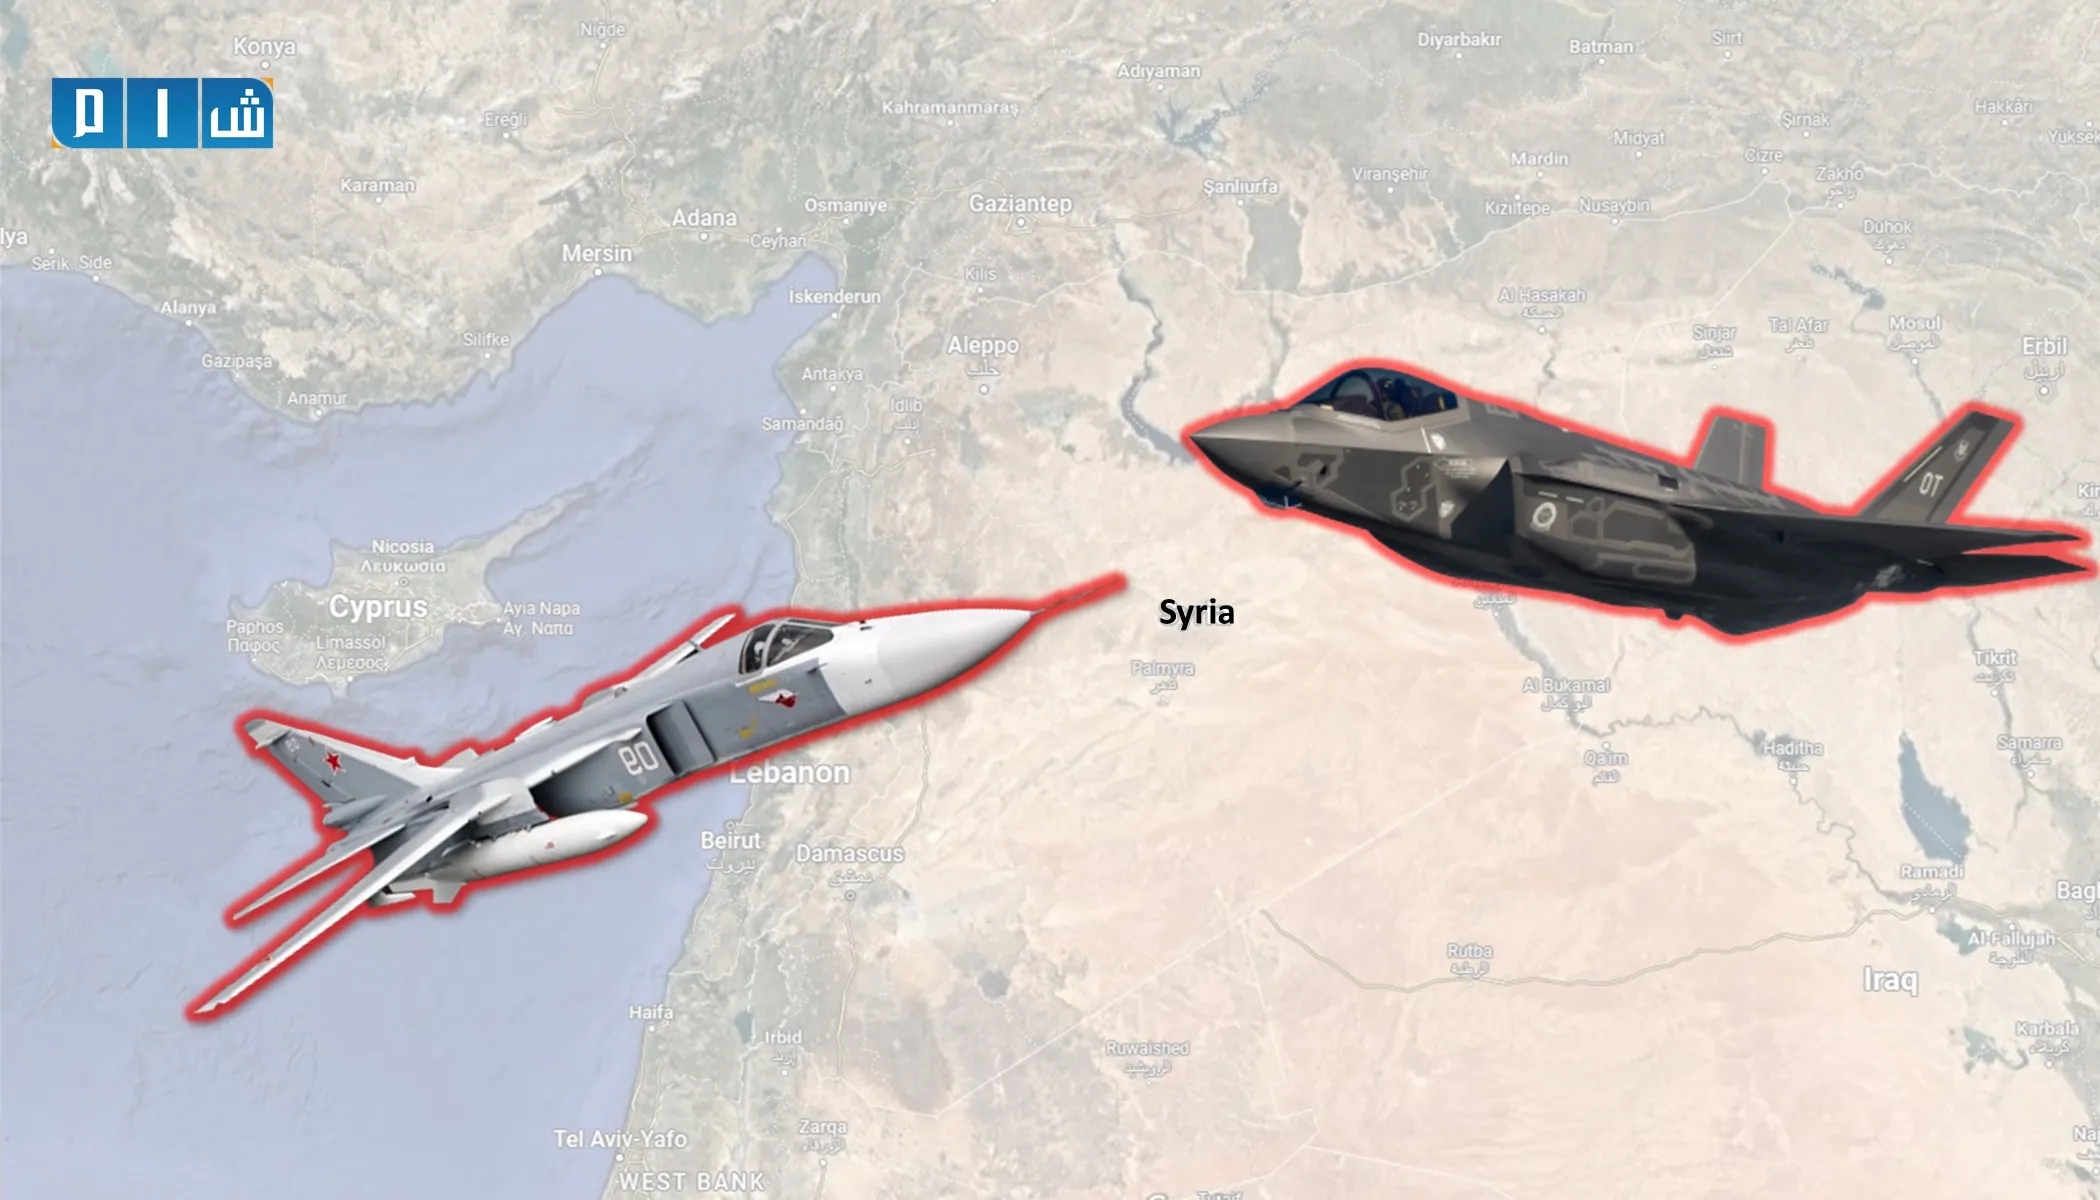 "المصالحة الروسي" يتهم التحالف الدولي بانتهاك سلامة الرحلات الجوية في سوريا 340 مرة